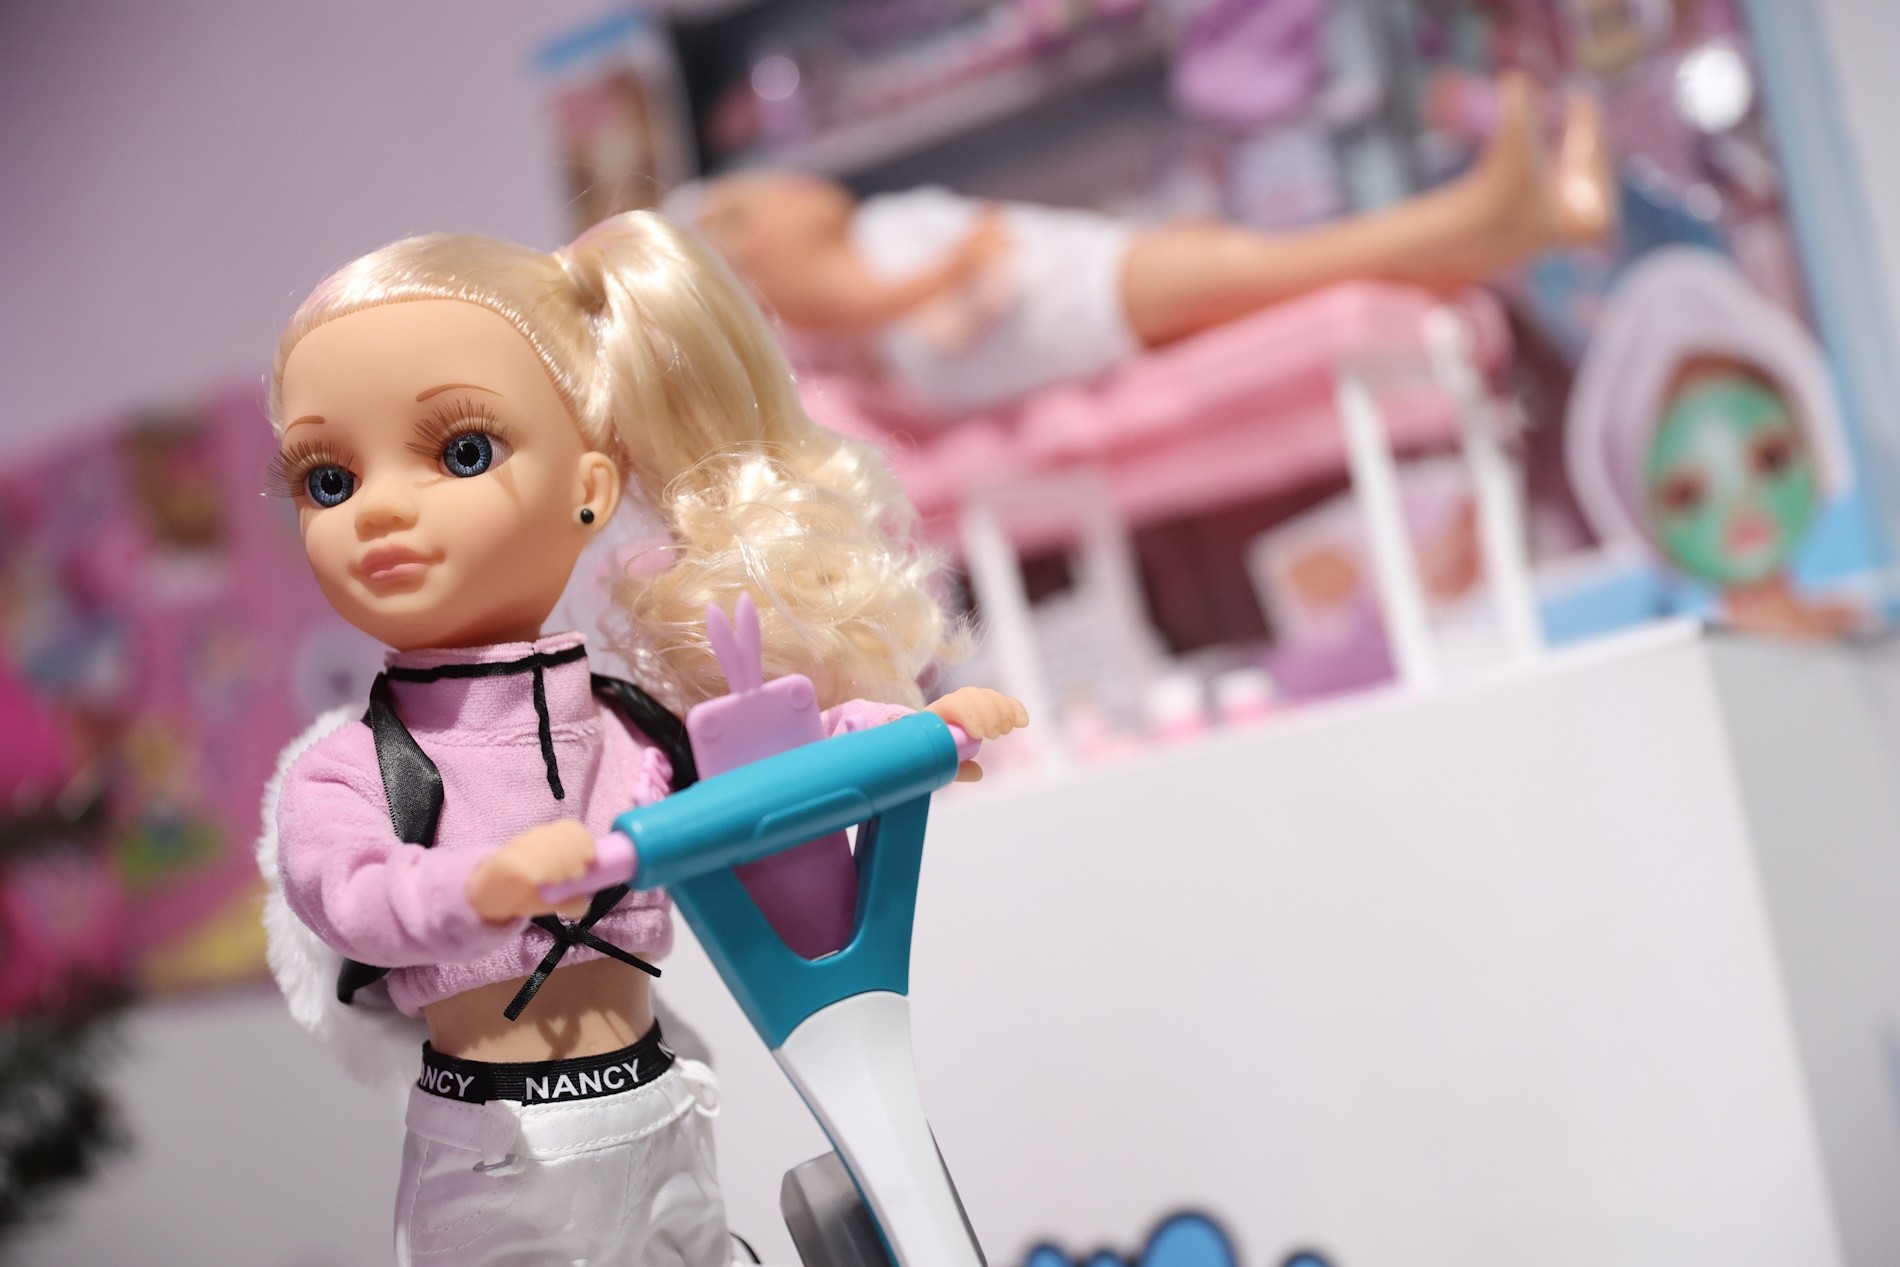 Les vendes de Nancy creixen un 30% i es posiciona com una de les marques més venudes del mercat de joguines